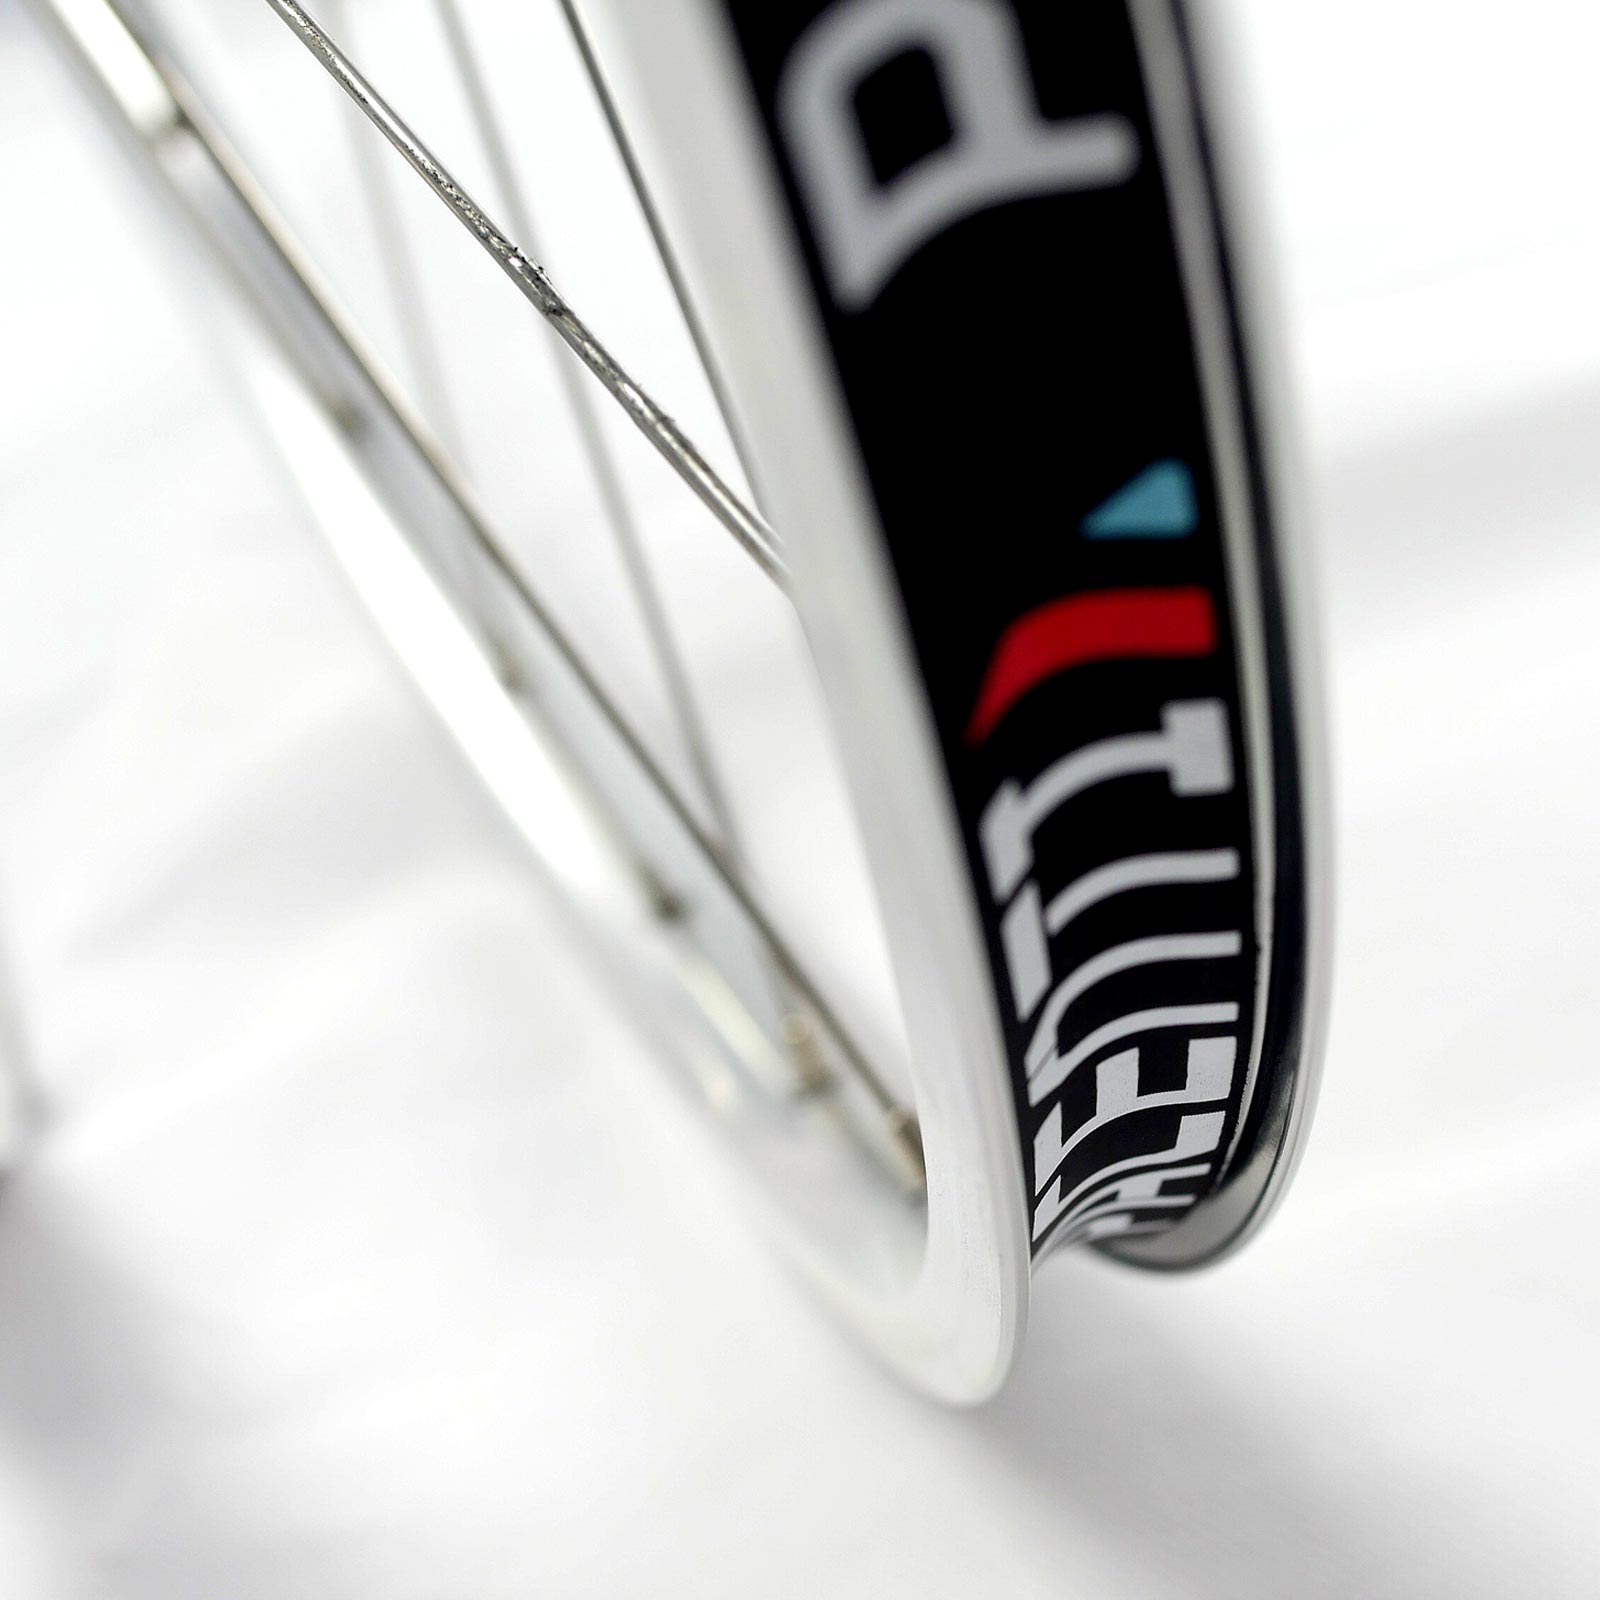 Retro Styled Brevet Wheelset - Aluminium Rim Detail